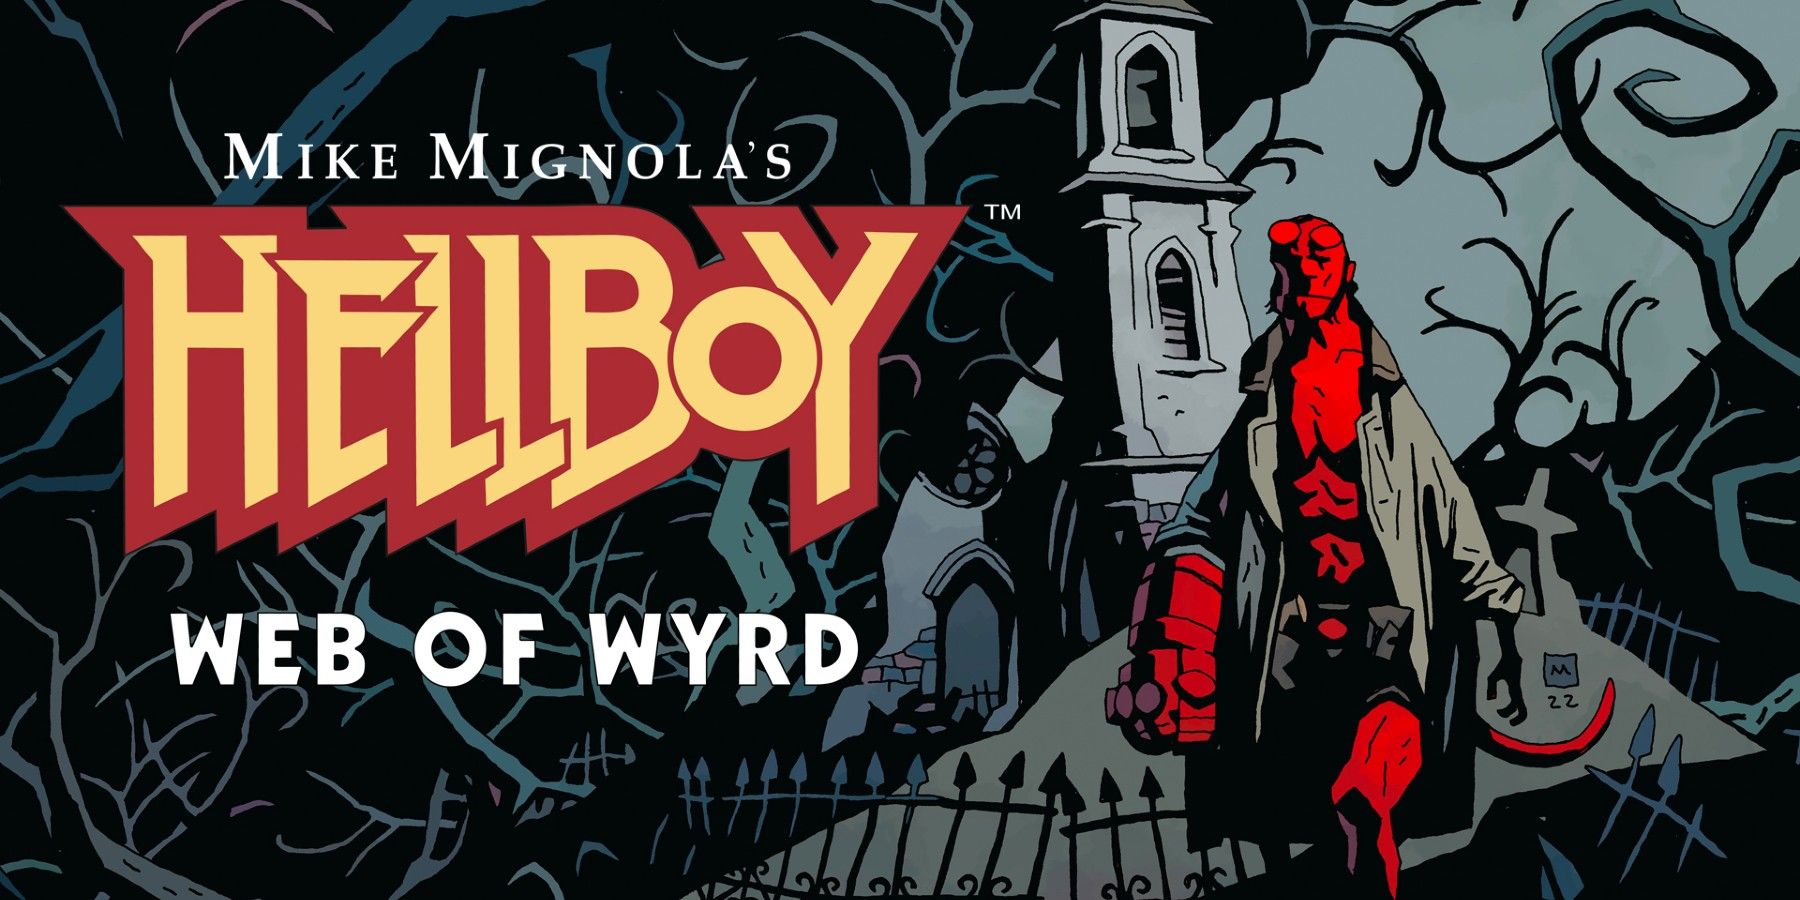 download hellboy way of wyrd